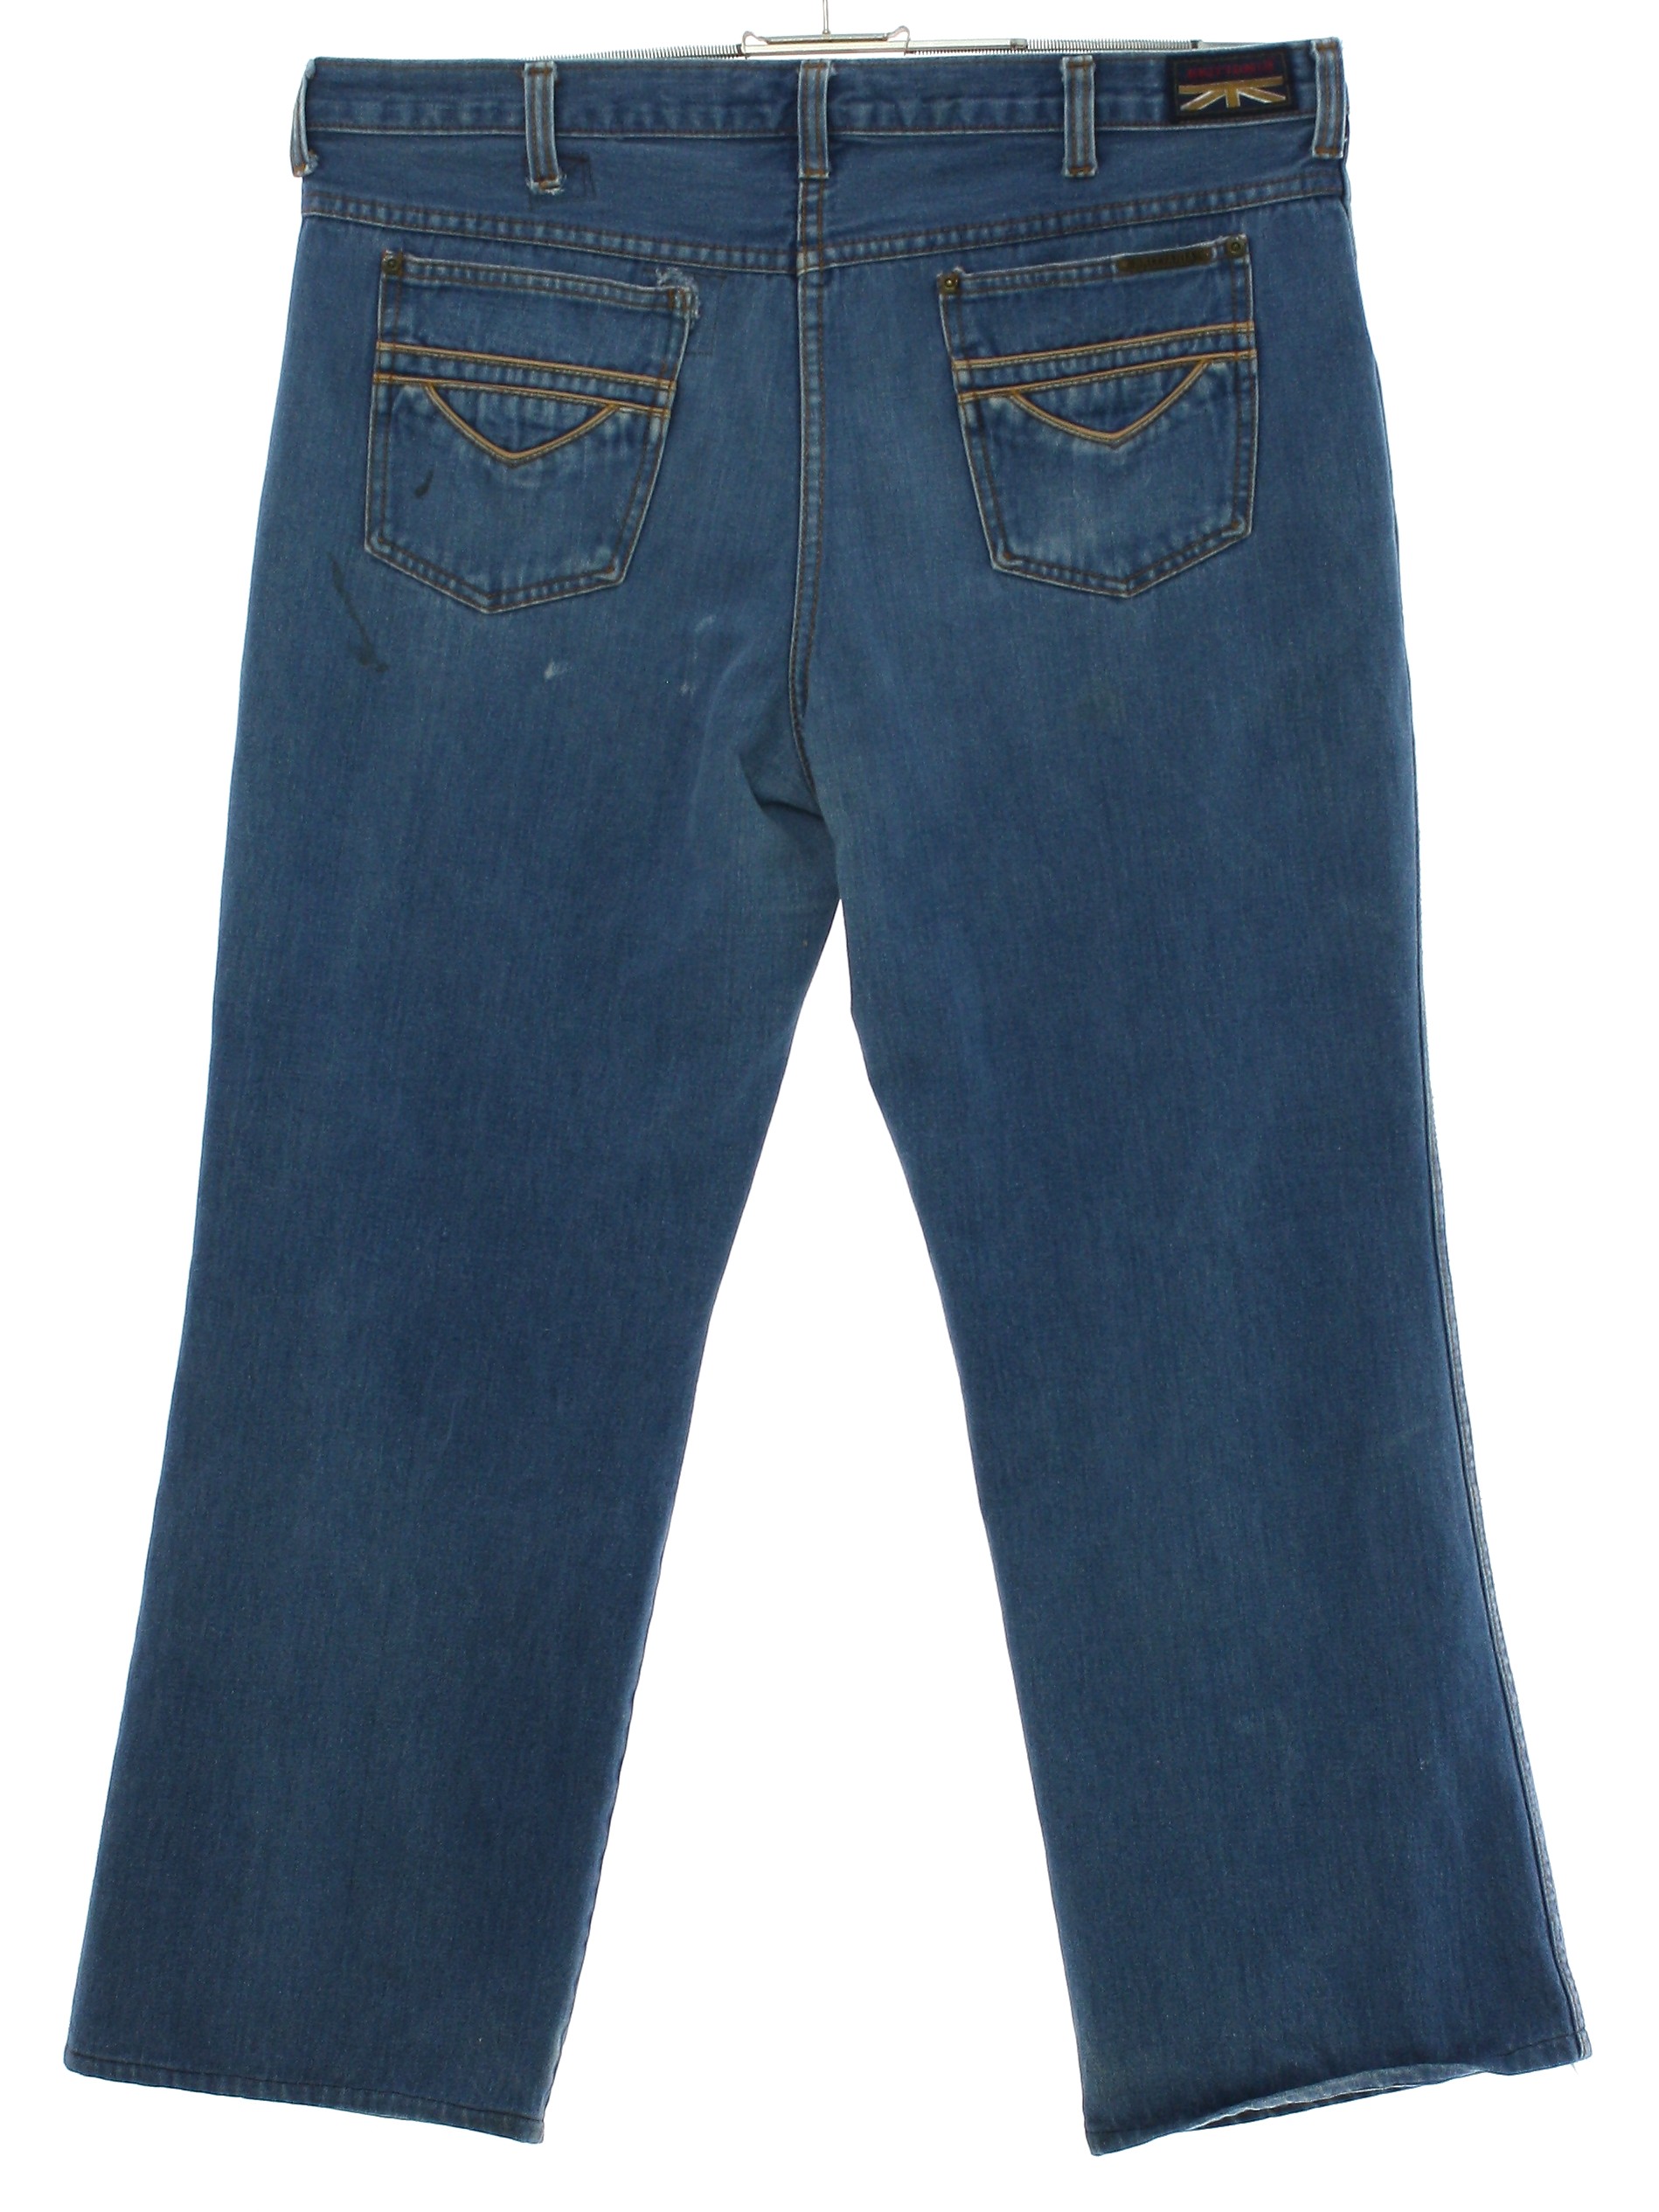 Eighties Vintage Pants: 80s -Crazee Wear- Mens teal, gray, black